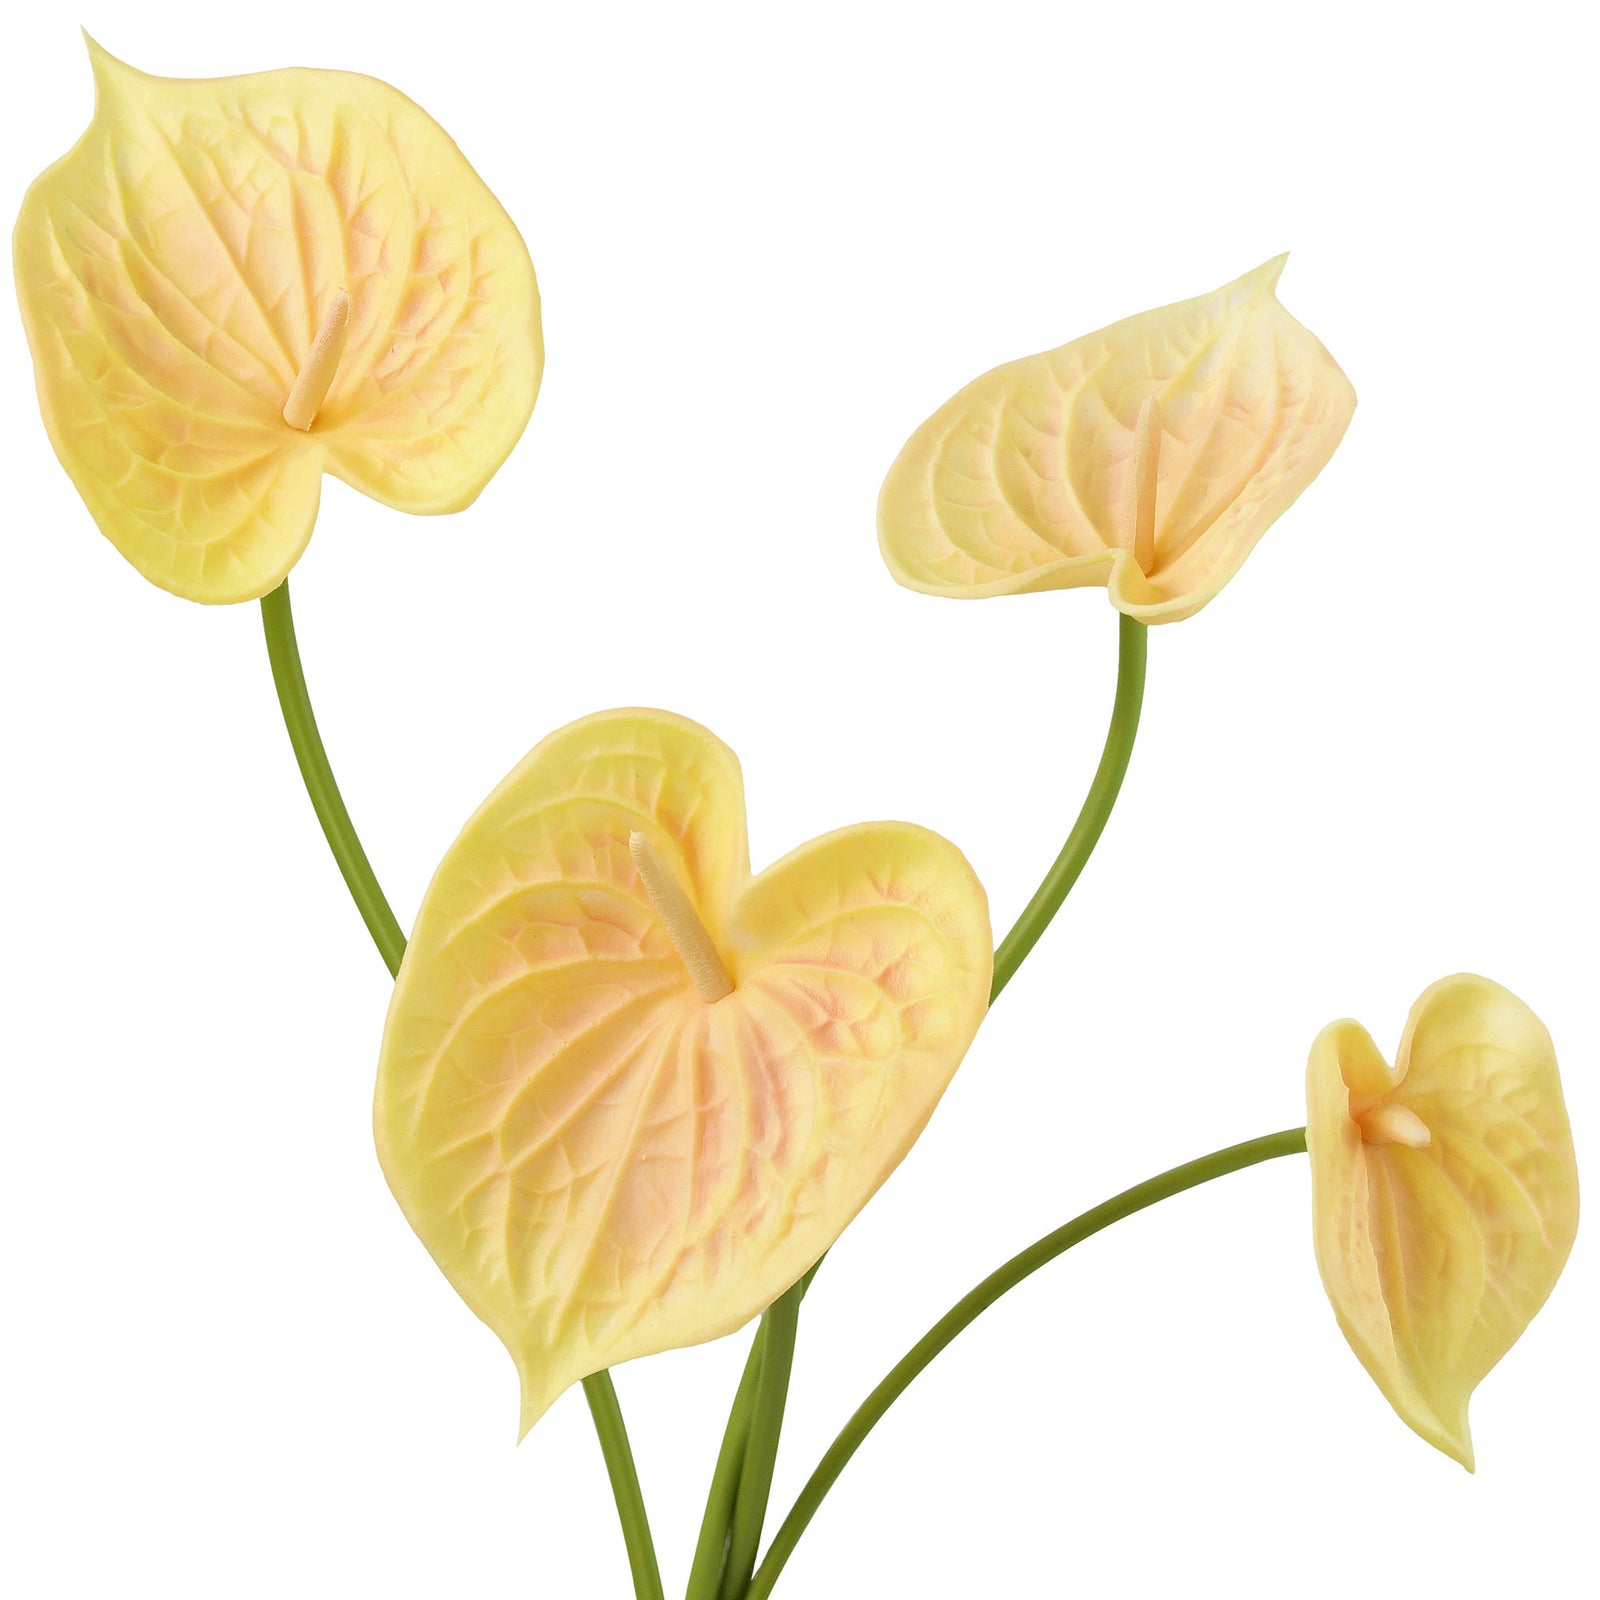 Anthurium Flower 'Peach Yellow' Real Touch Artificial Flowers, 16.5” 4 –  FiveSeasonStuff